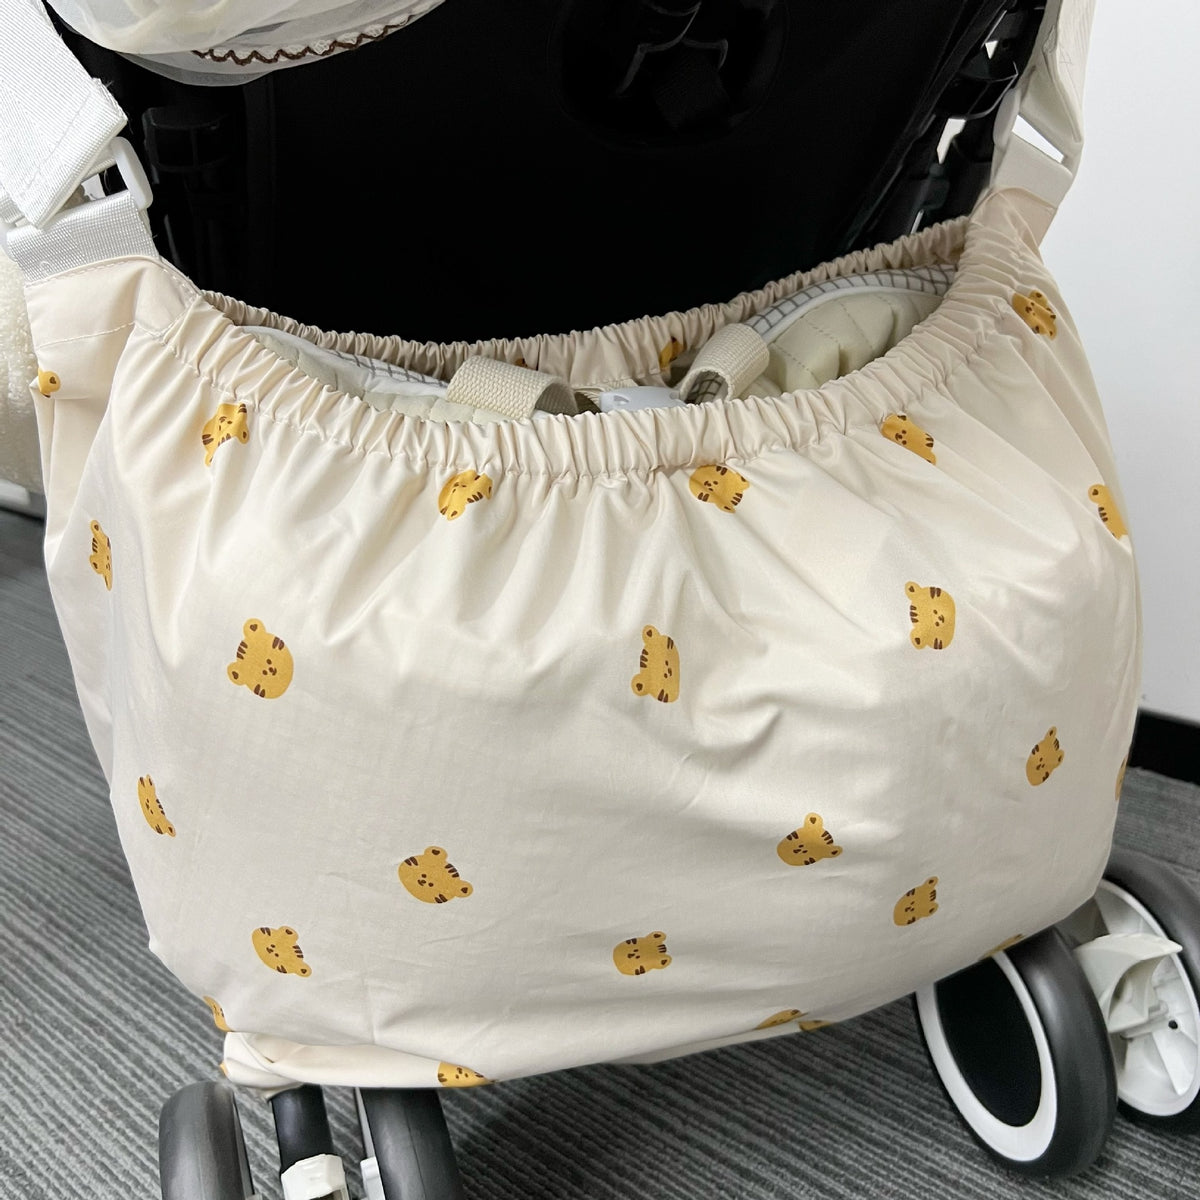 Mommy Bags/ Nappy Caddy Stroller Hangende opbergtas voor 4-6 jr